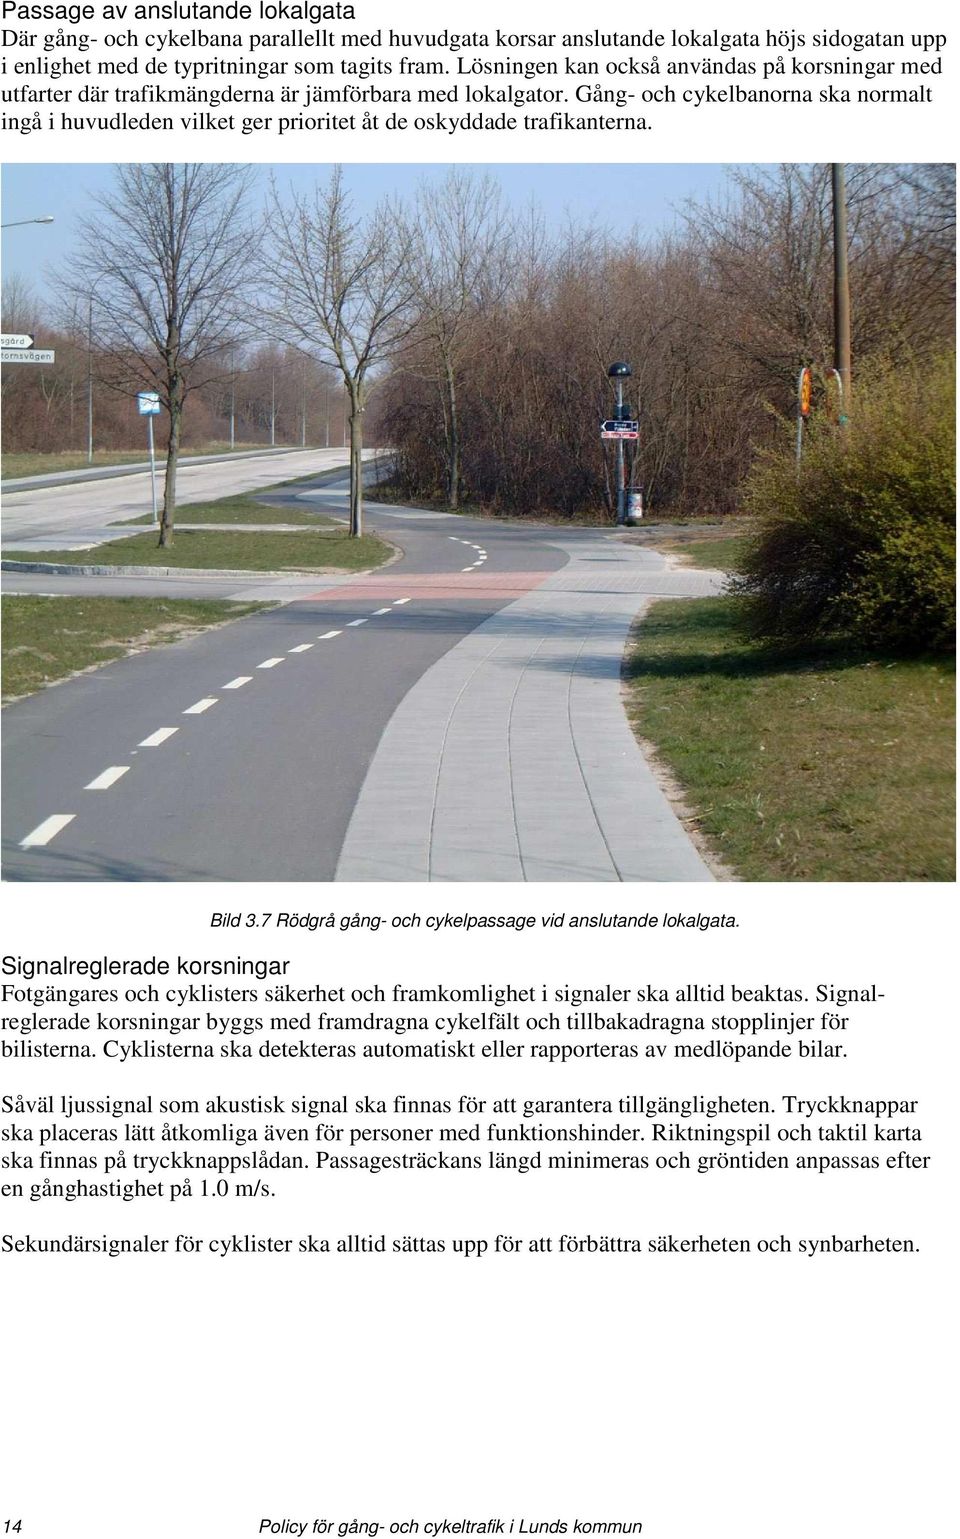 Gång- och cykelbanorna ska normalt ingå i huvudleden vilket ger prioritet åt de oskyddade trafikanterna. Bild 3.7 Rödgrå gång- och cykelpassage vid anslutande lokalgata.